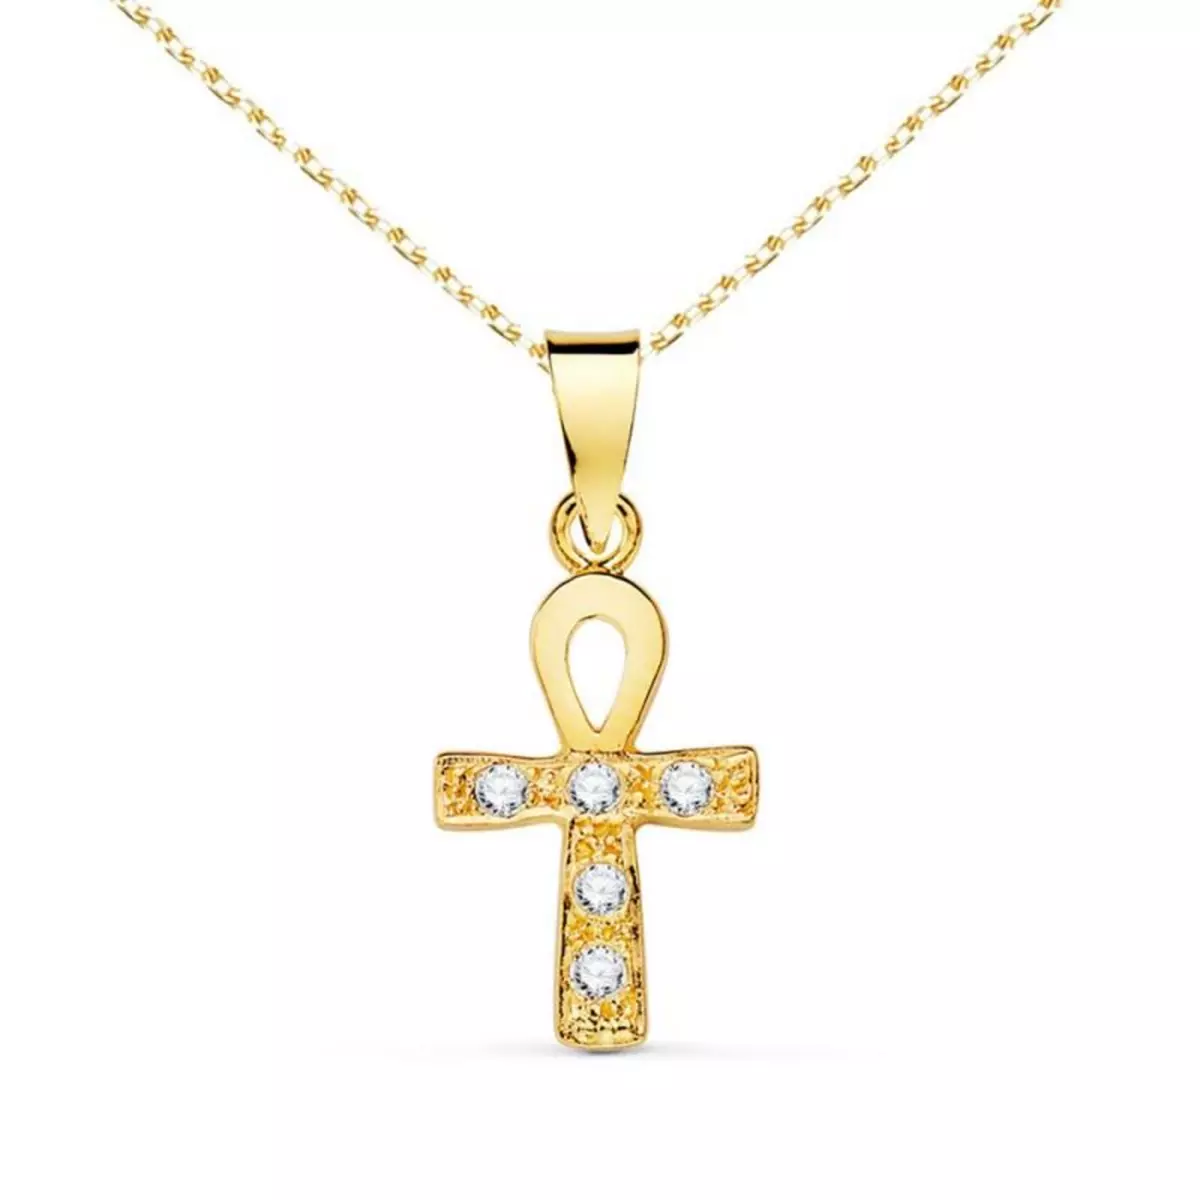 L'ATELIER D'AZUR Collier - Médaille Croix Or 18 Carats 750/000 Jaune et Zirconiums - Chaine Dorée